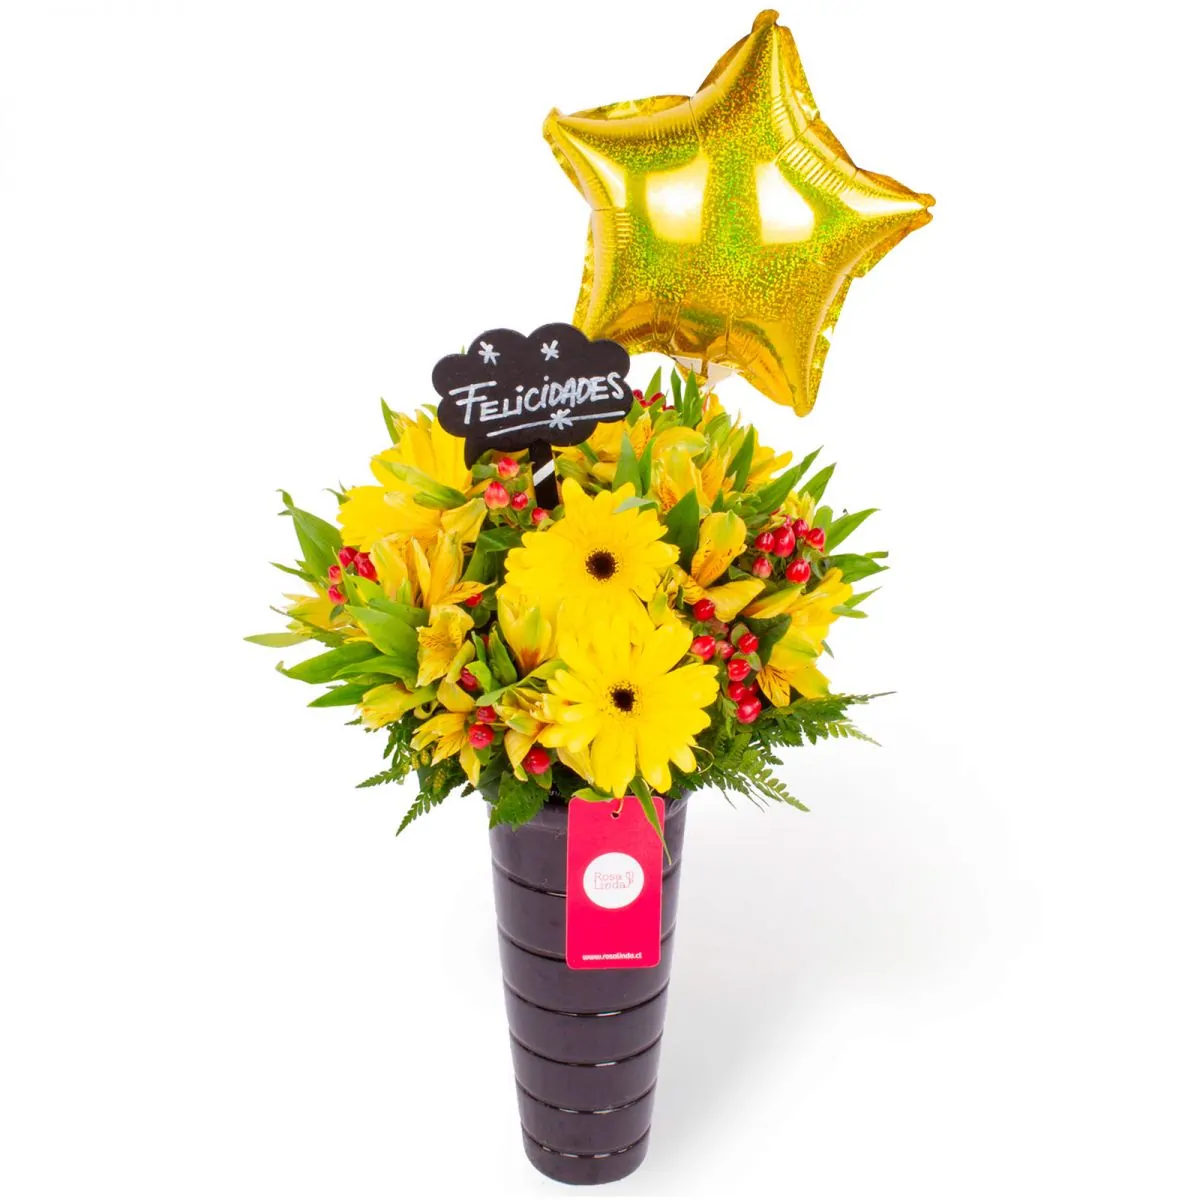 Foto principal Felicidades Amarillo - Arreglo floral de celebración con globo, gerberas y astromelias amarillas e hypericum rojo